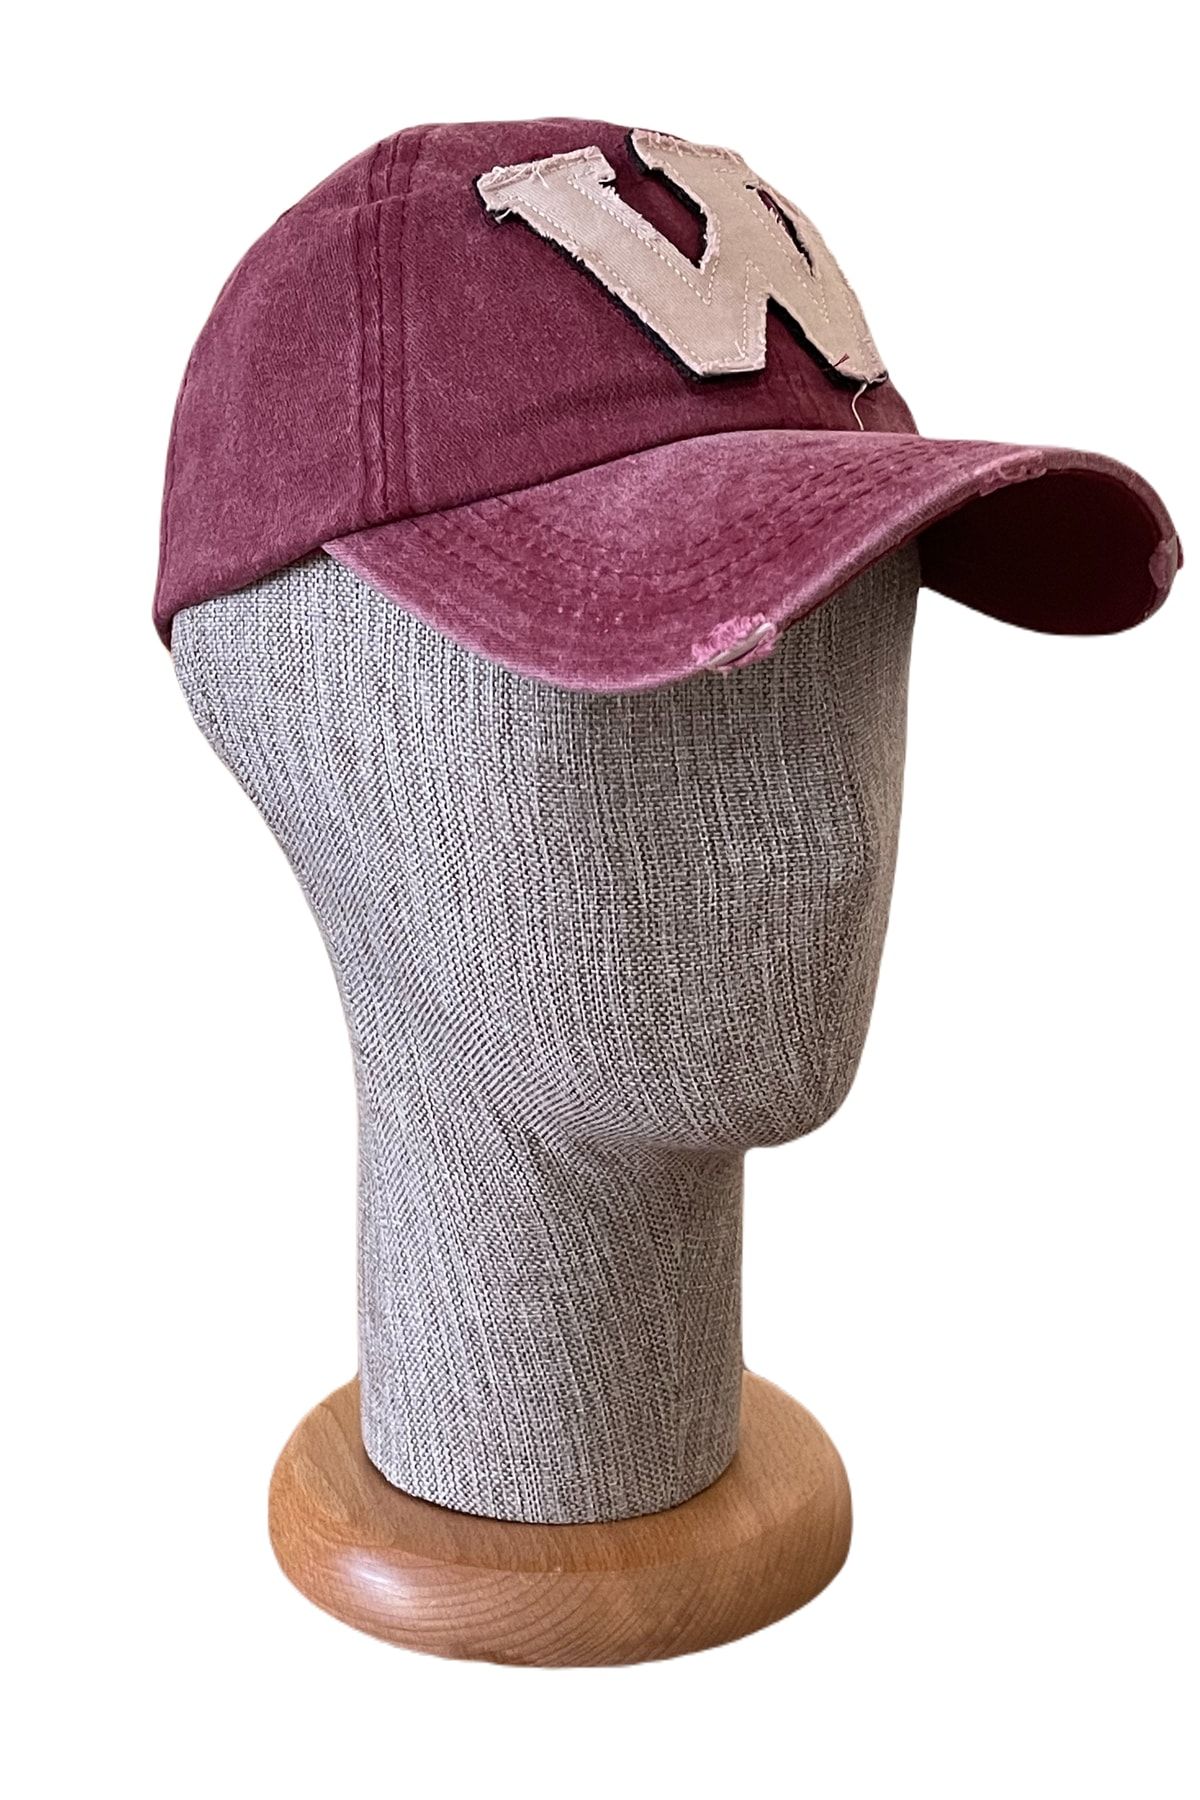 Rupen Kraft W Model Eskitme Şapka Vintage Şapka Kep